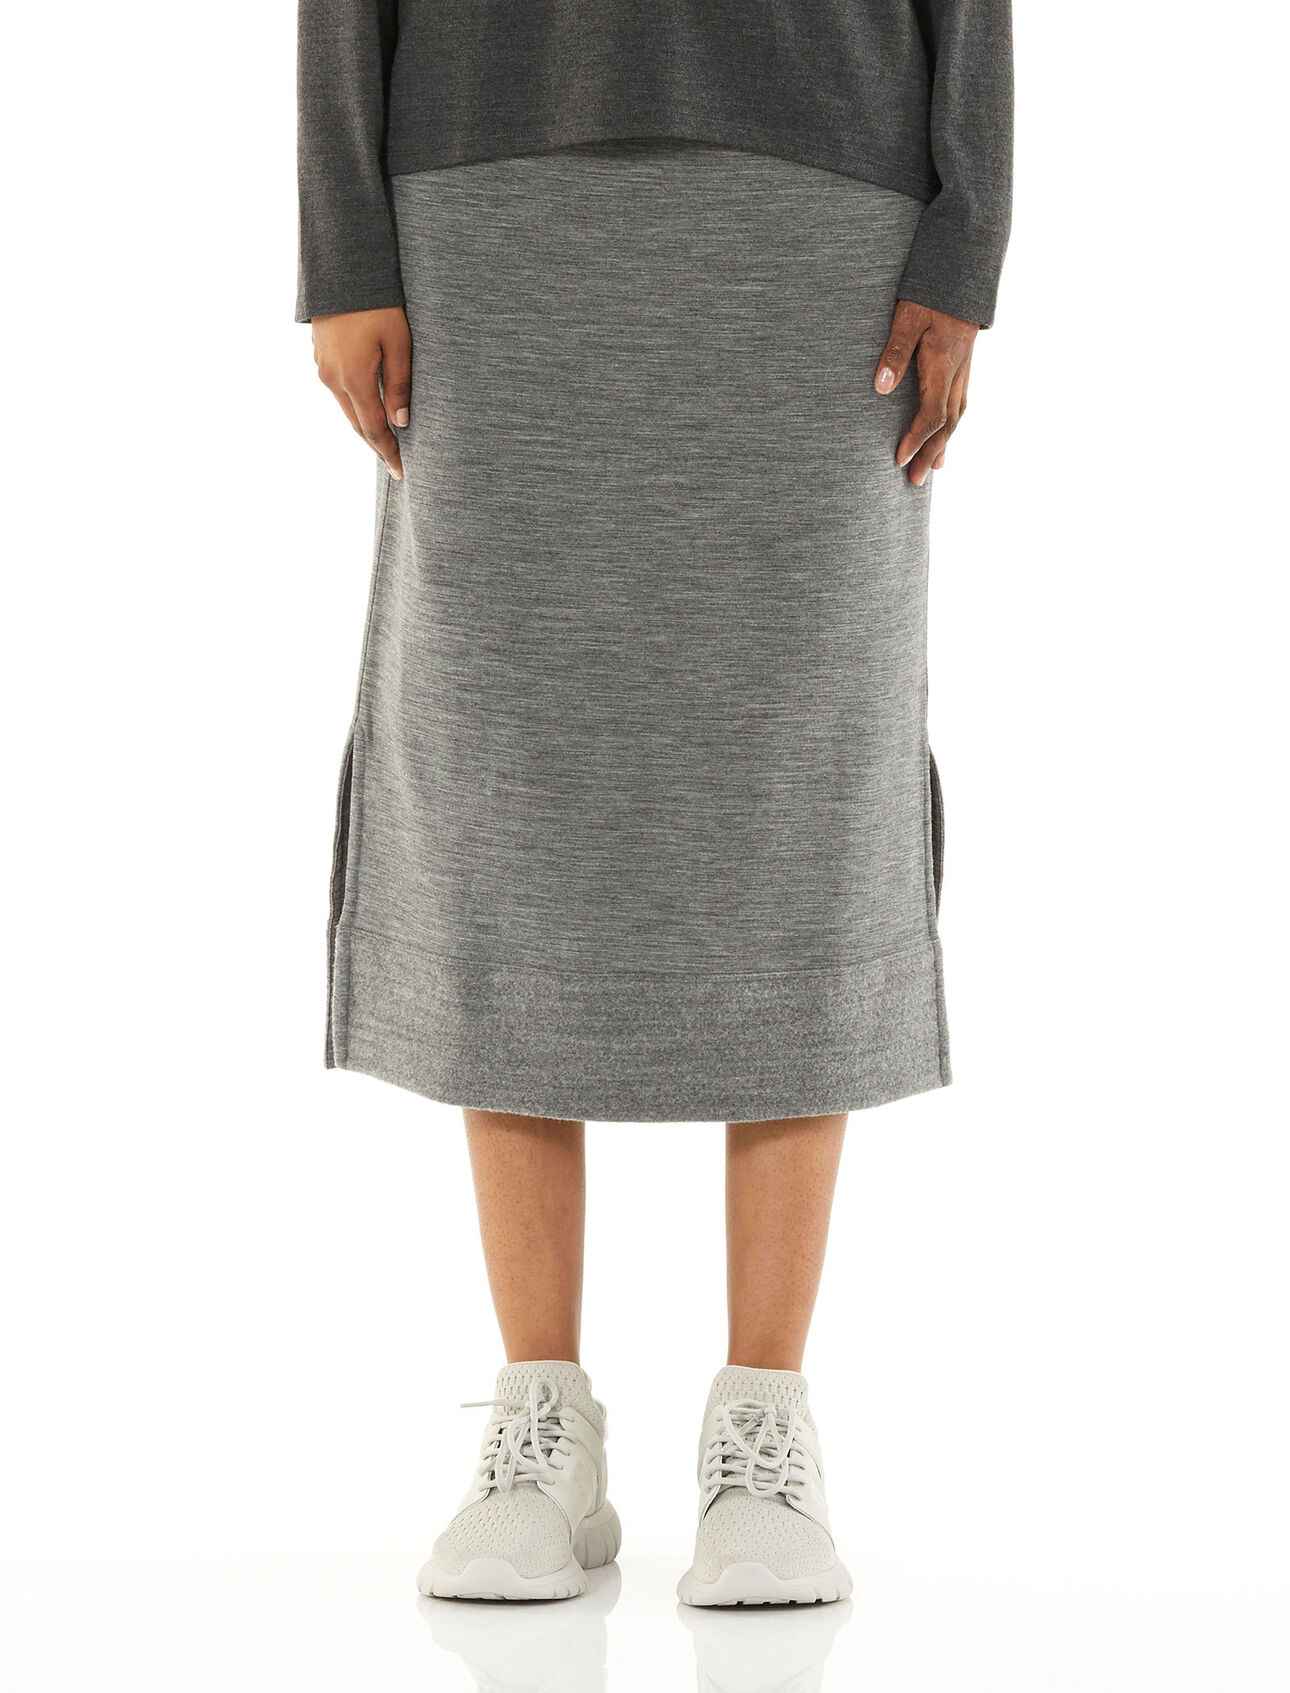 RealFleece® Merino Tight Skirt